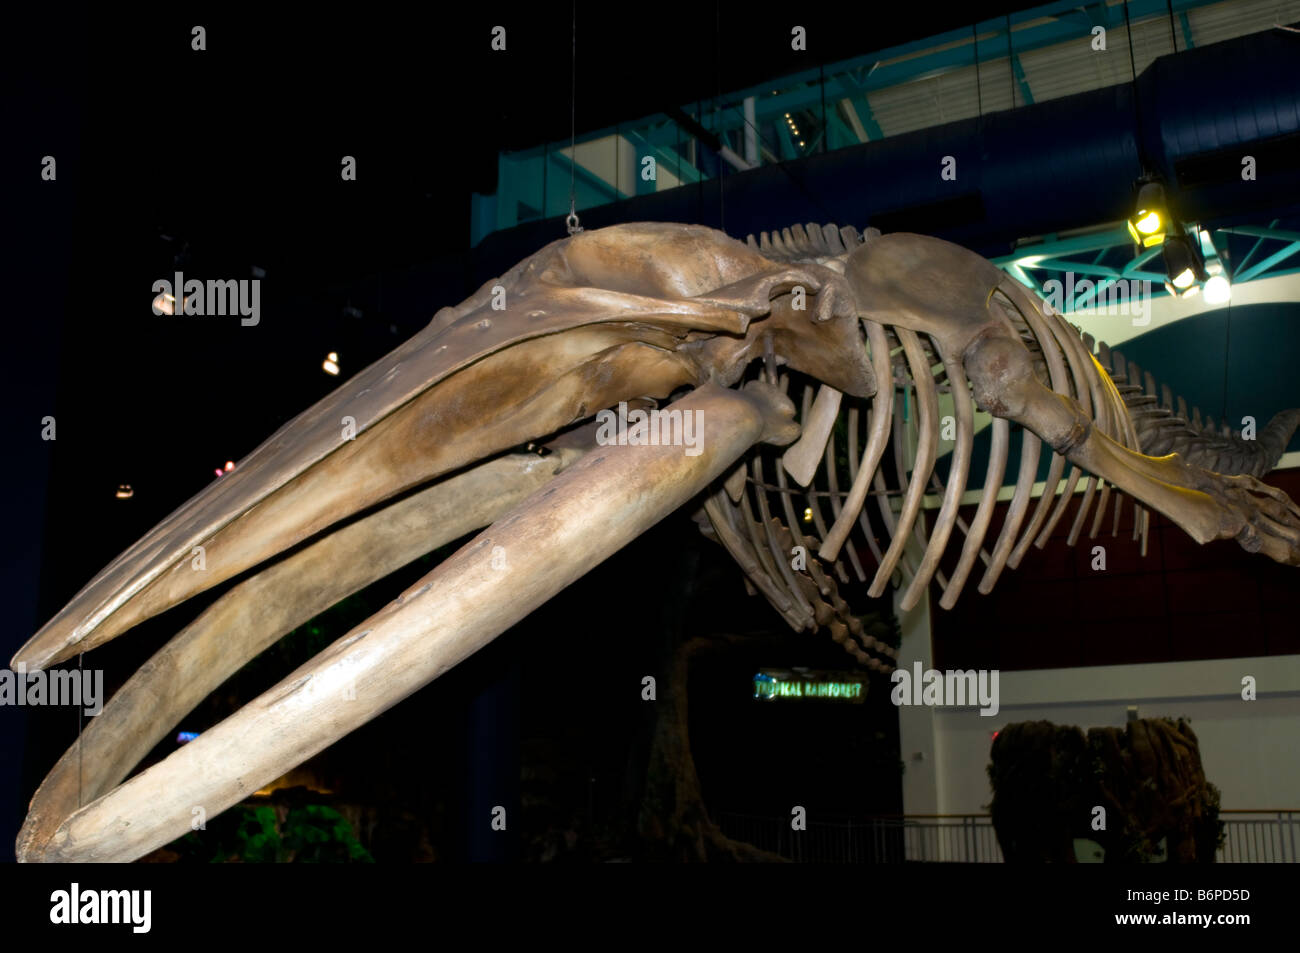 Scheletro di balena display pensile a Ripley's acquario in Gatlinburg Tennessee Foto Stock